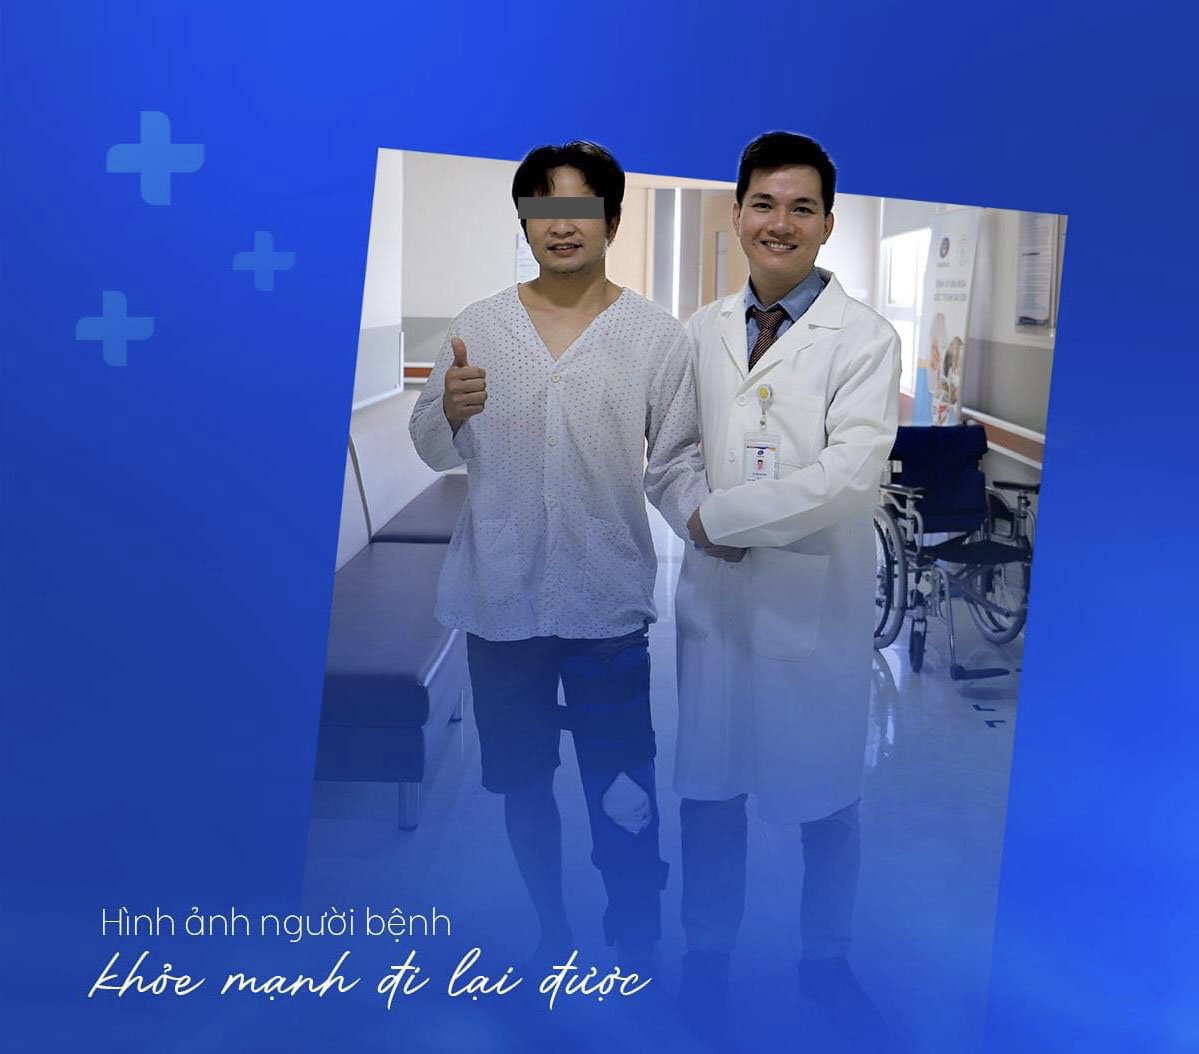 Bác sĩ Lê Văn Quỳnh - Người mang lại hy vọng cho những bệnh nhân đứt dây chằng - 1